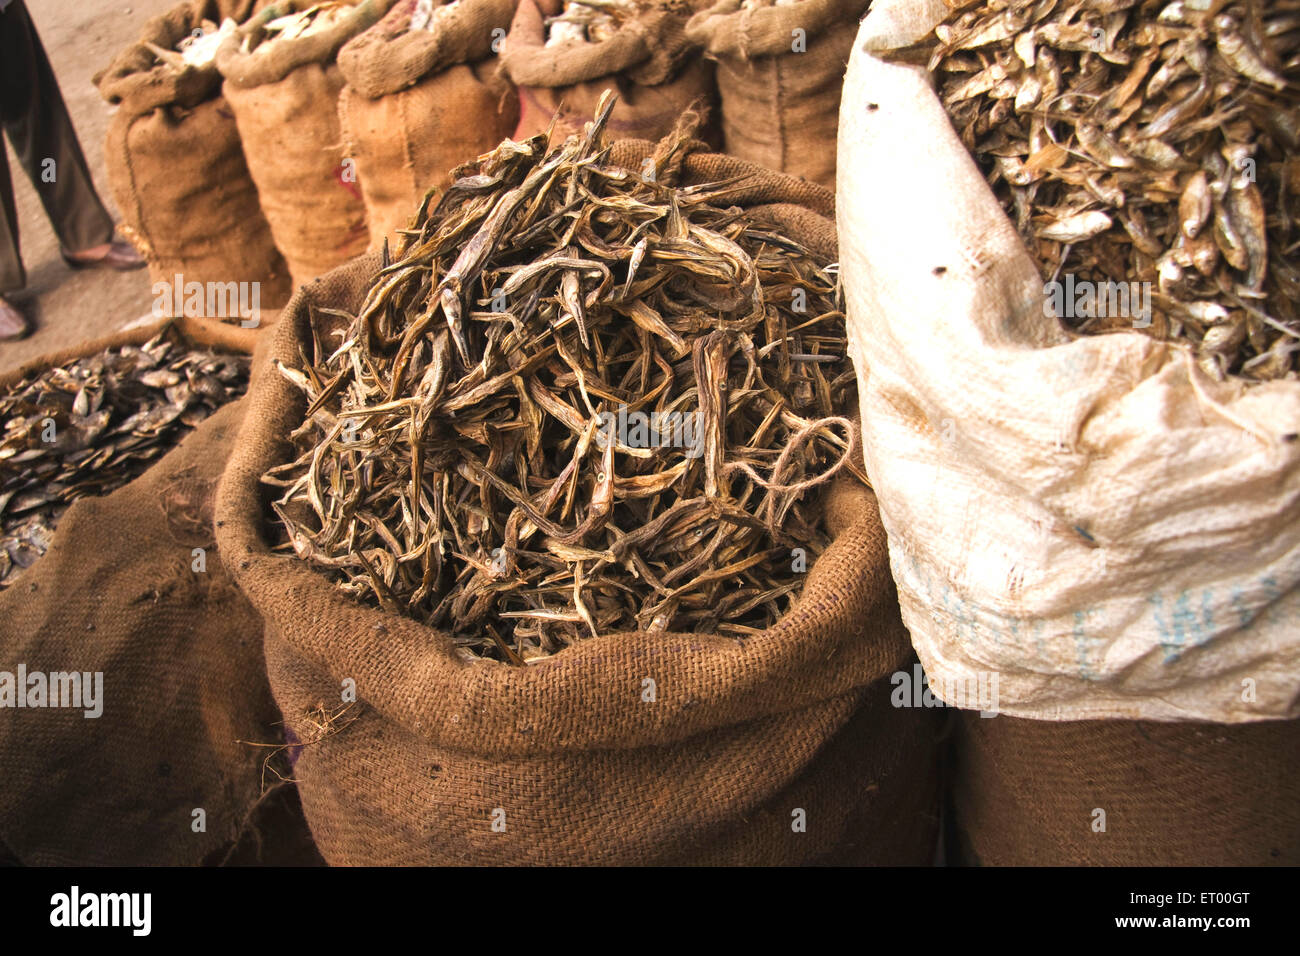 Pescado seco embalado en sacos para la venta, mercado de pescado seco, Jagiroad, Assam, India, Asia Foto de stock